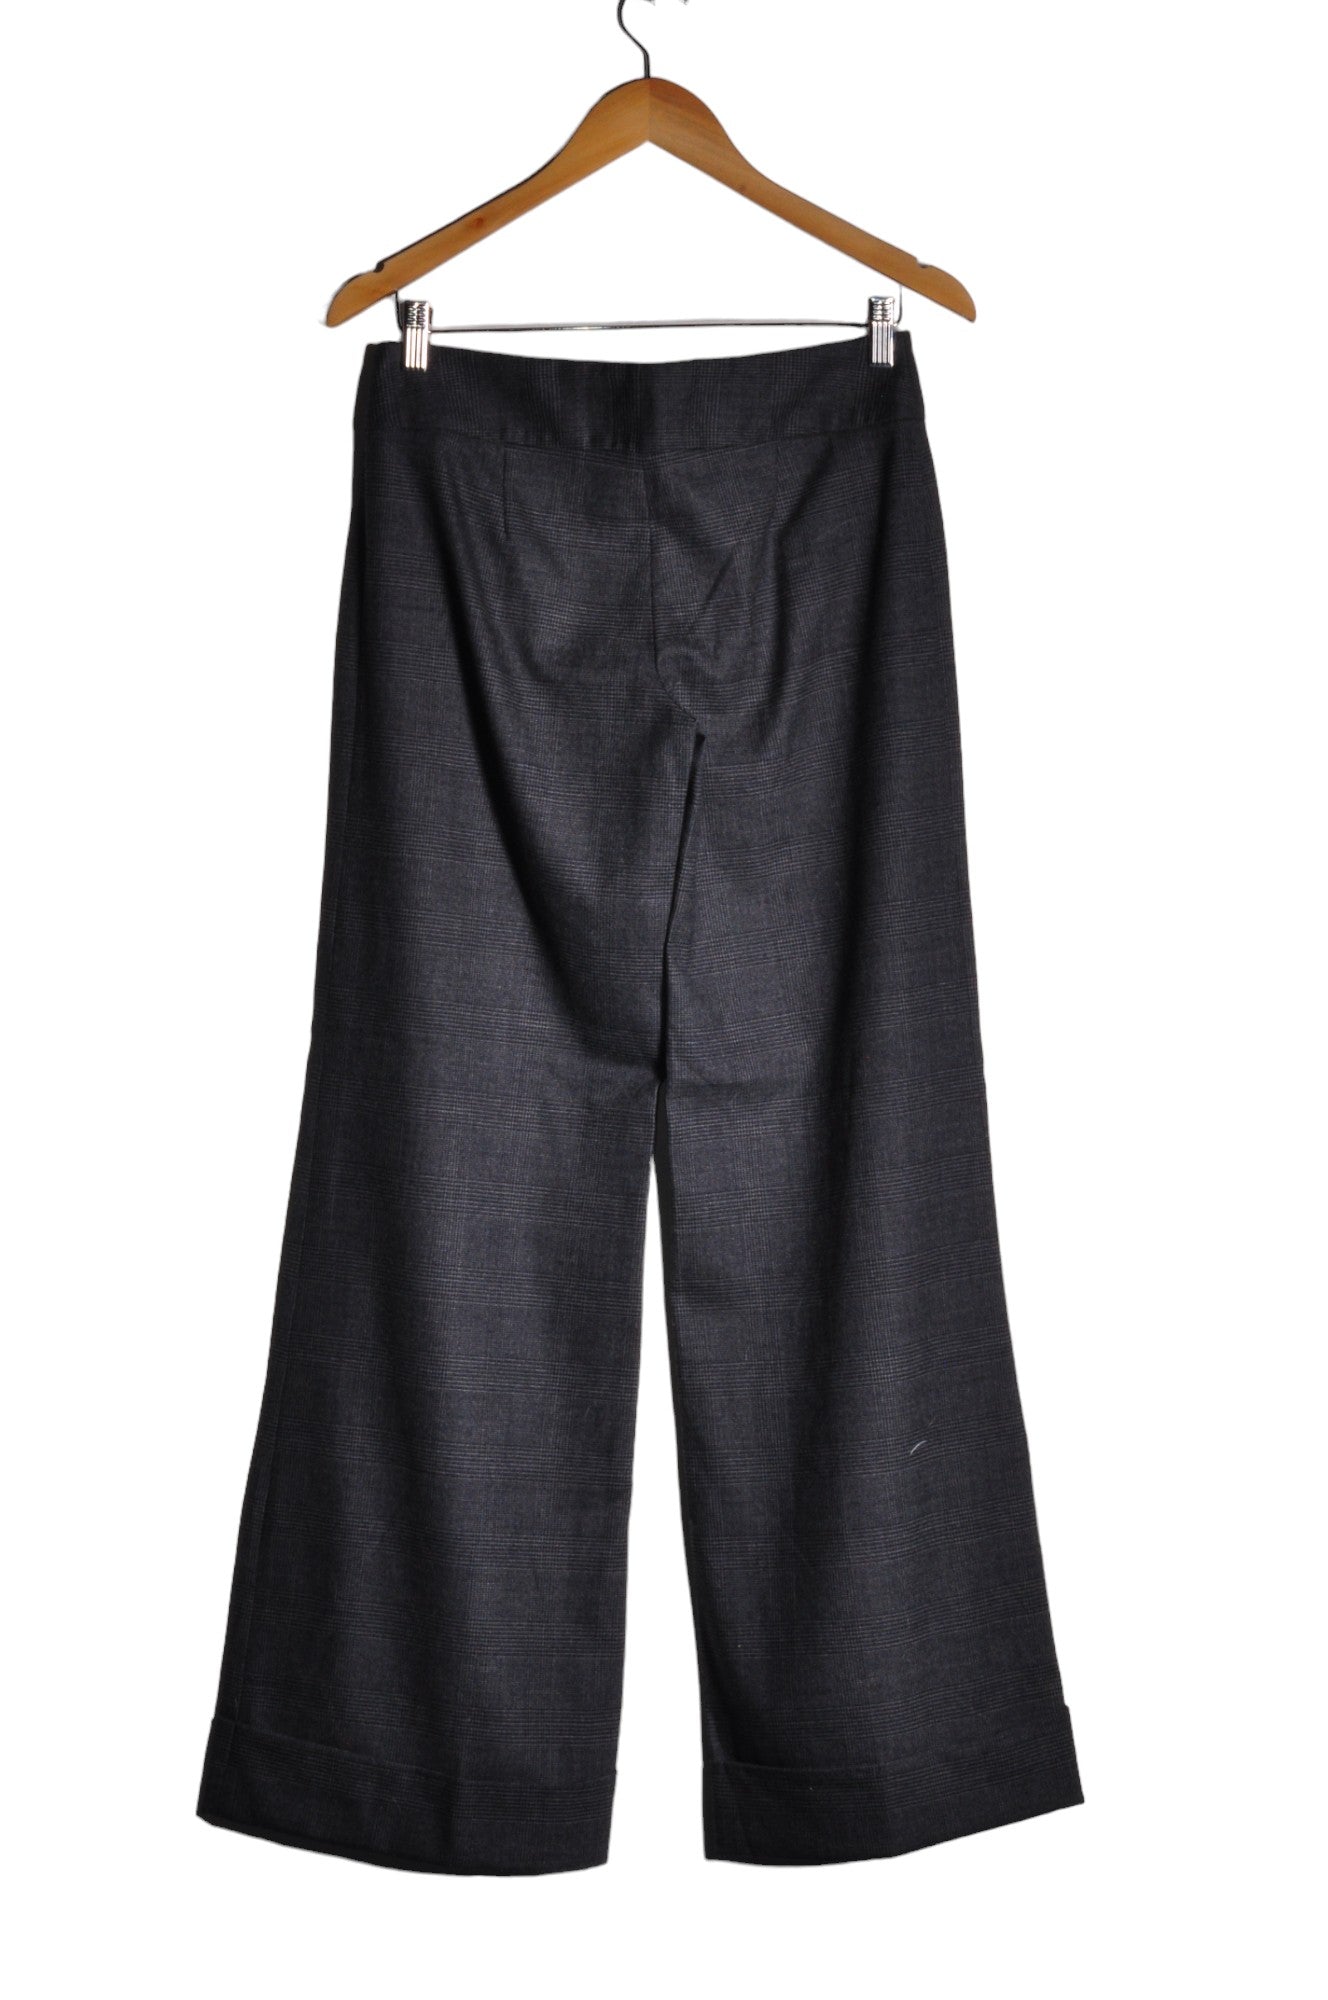 MICHAEL KORS Women Work Pants Regular fit in Gray - Size 2 | 118 $ KOOP